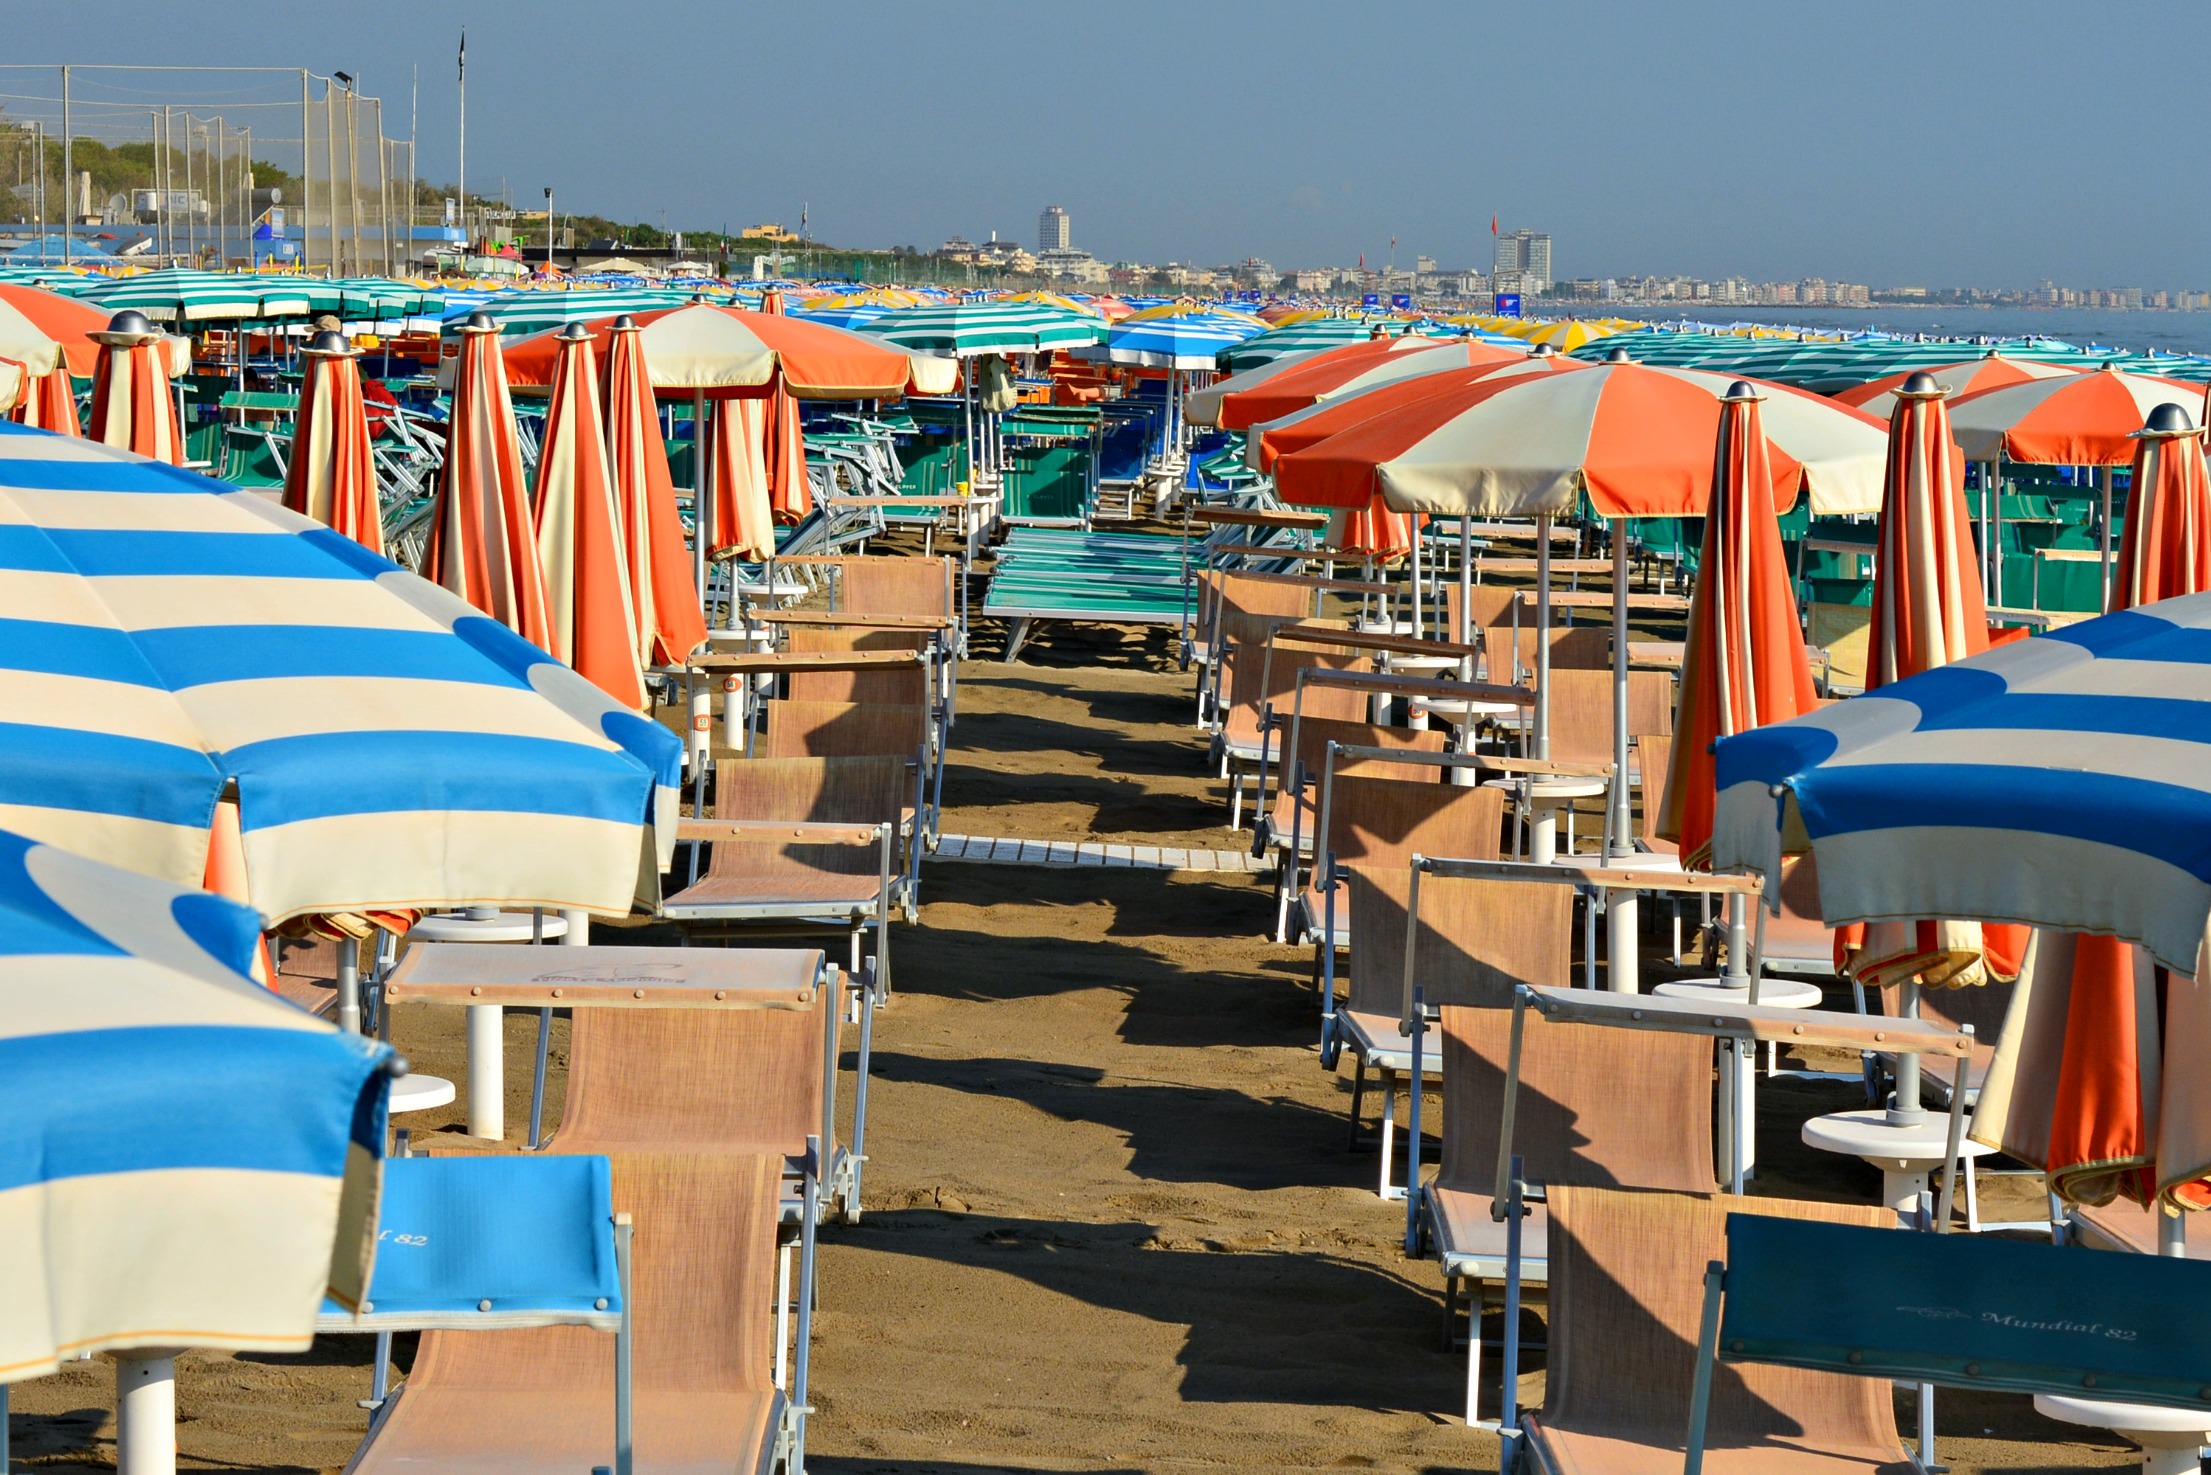 Zadina spiaggia beach in Cesenatico Italy